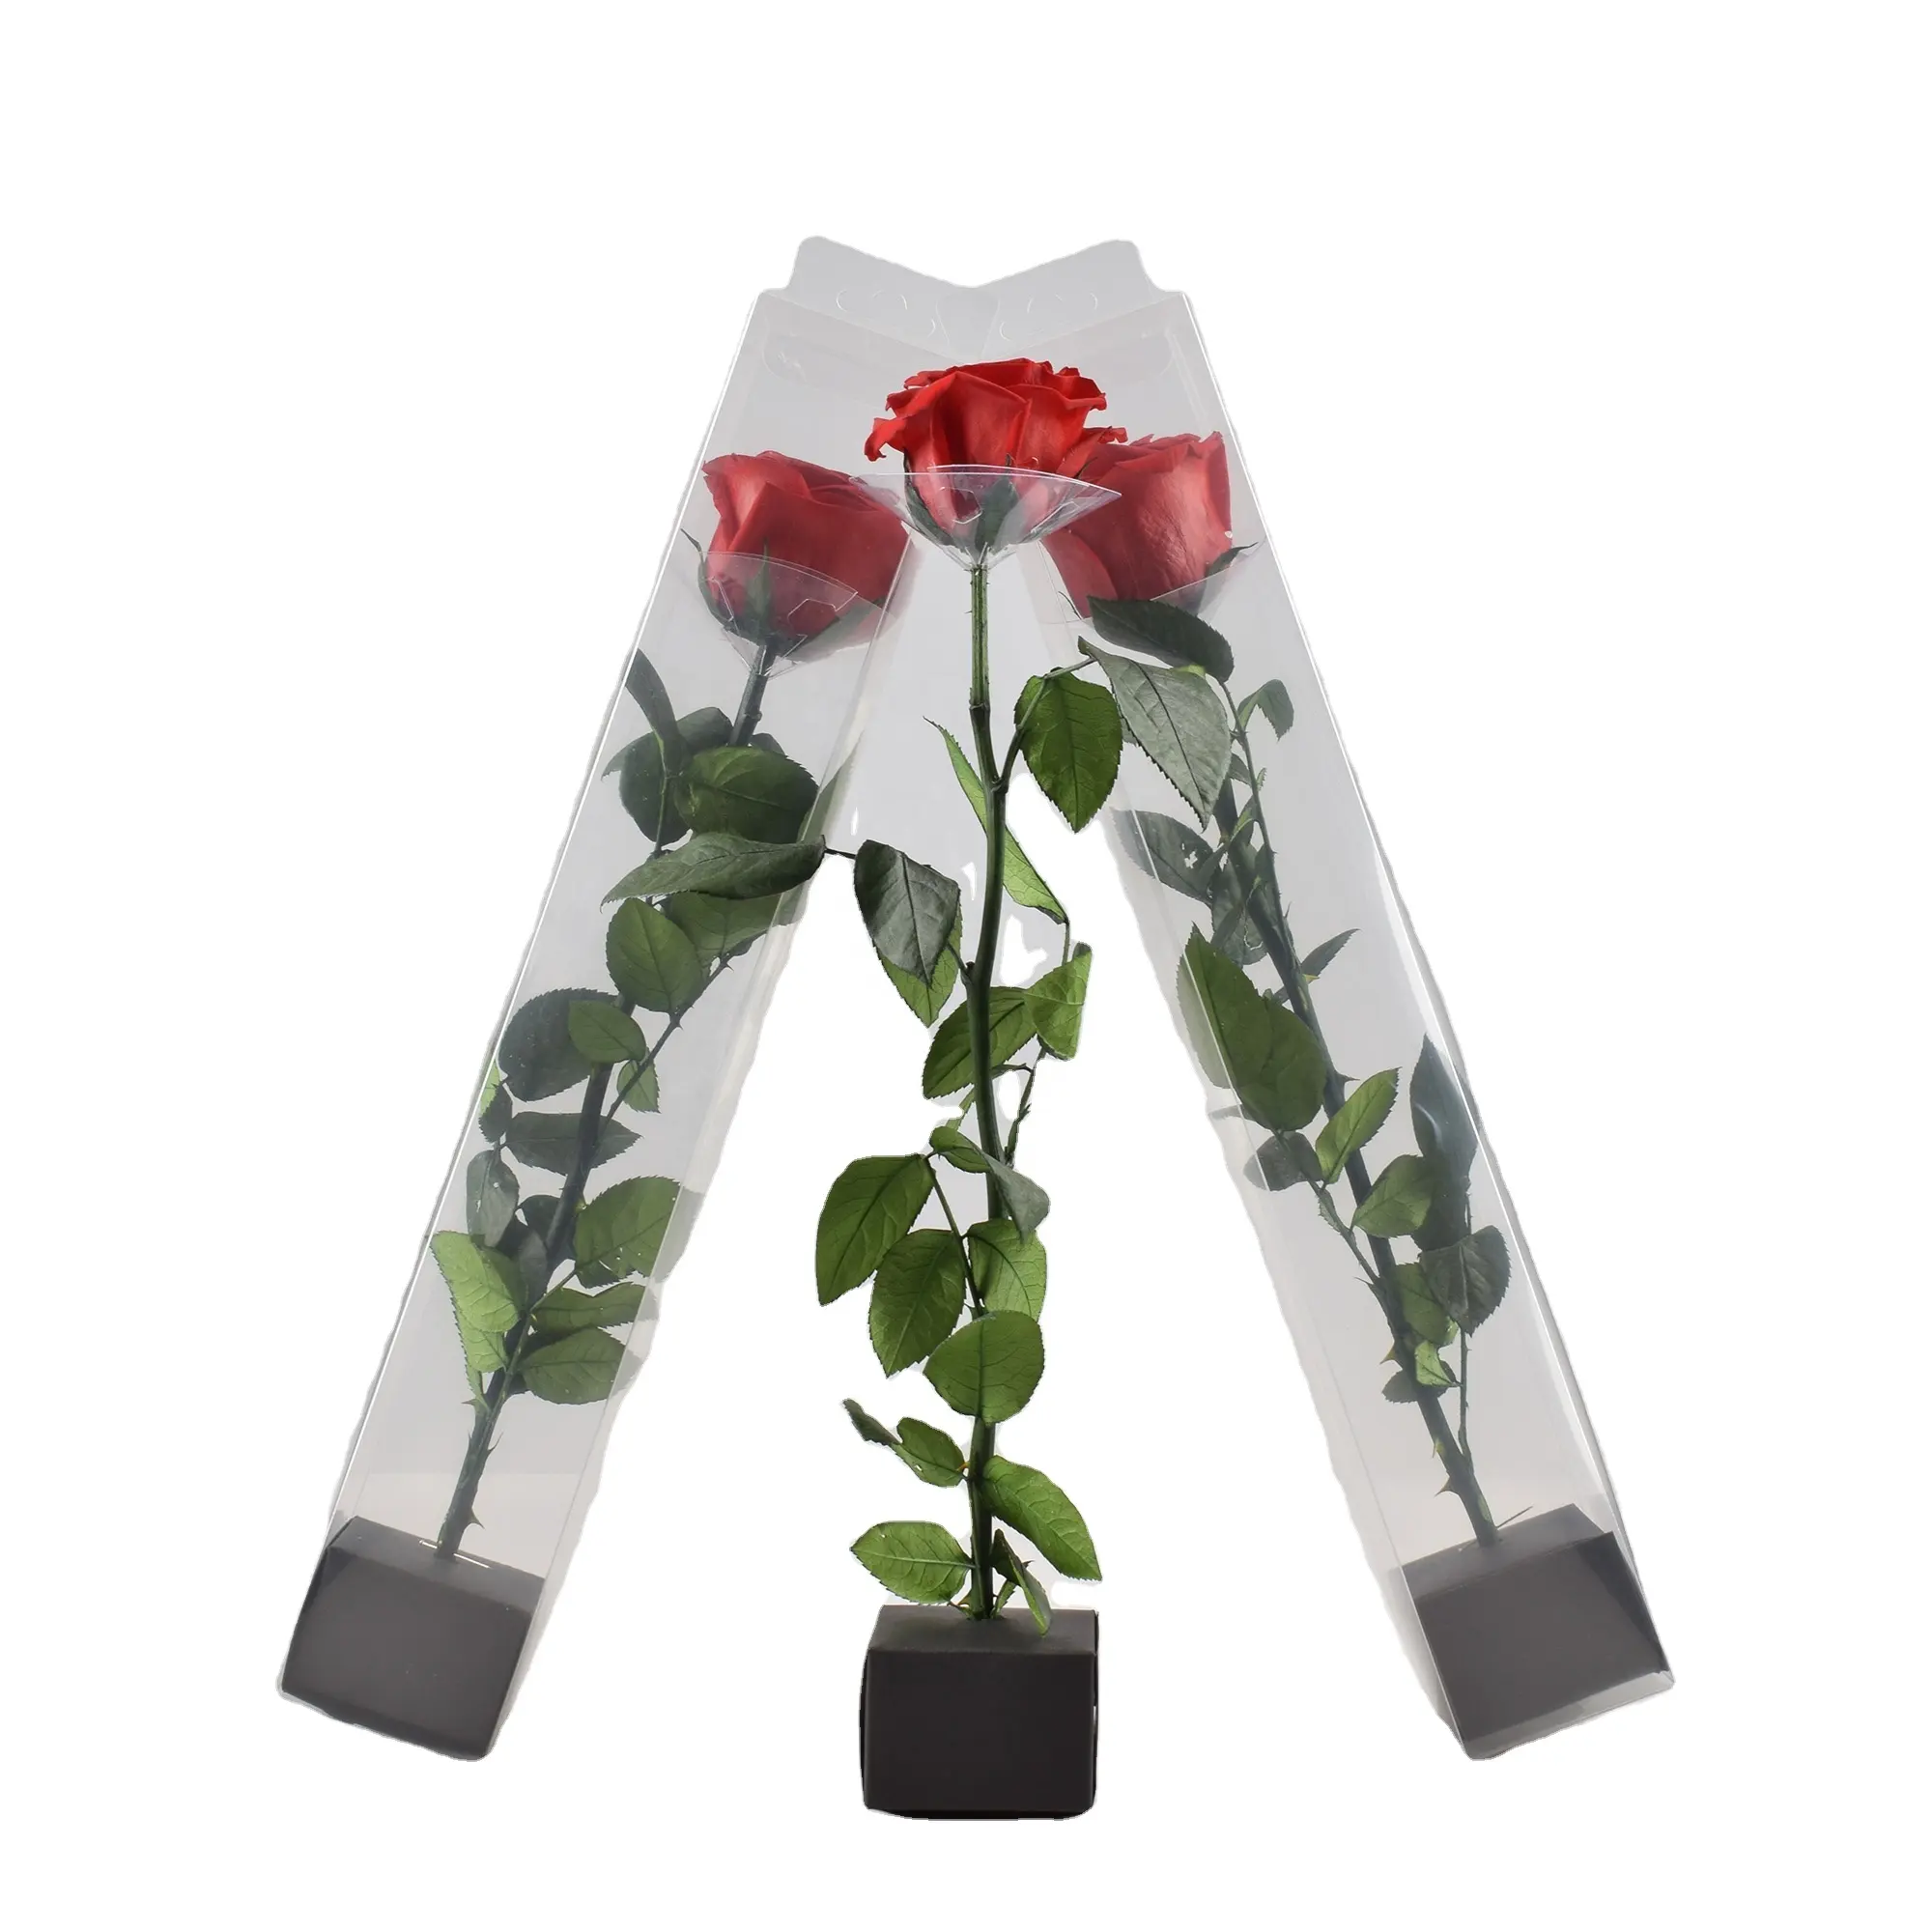 HFlora Factory Supply 40cm hoch Langs tiel Rose 5 ~ 6 cm Rosenblüten kopf natürlich konservierte Rosen für Home Wedding Decoration